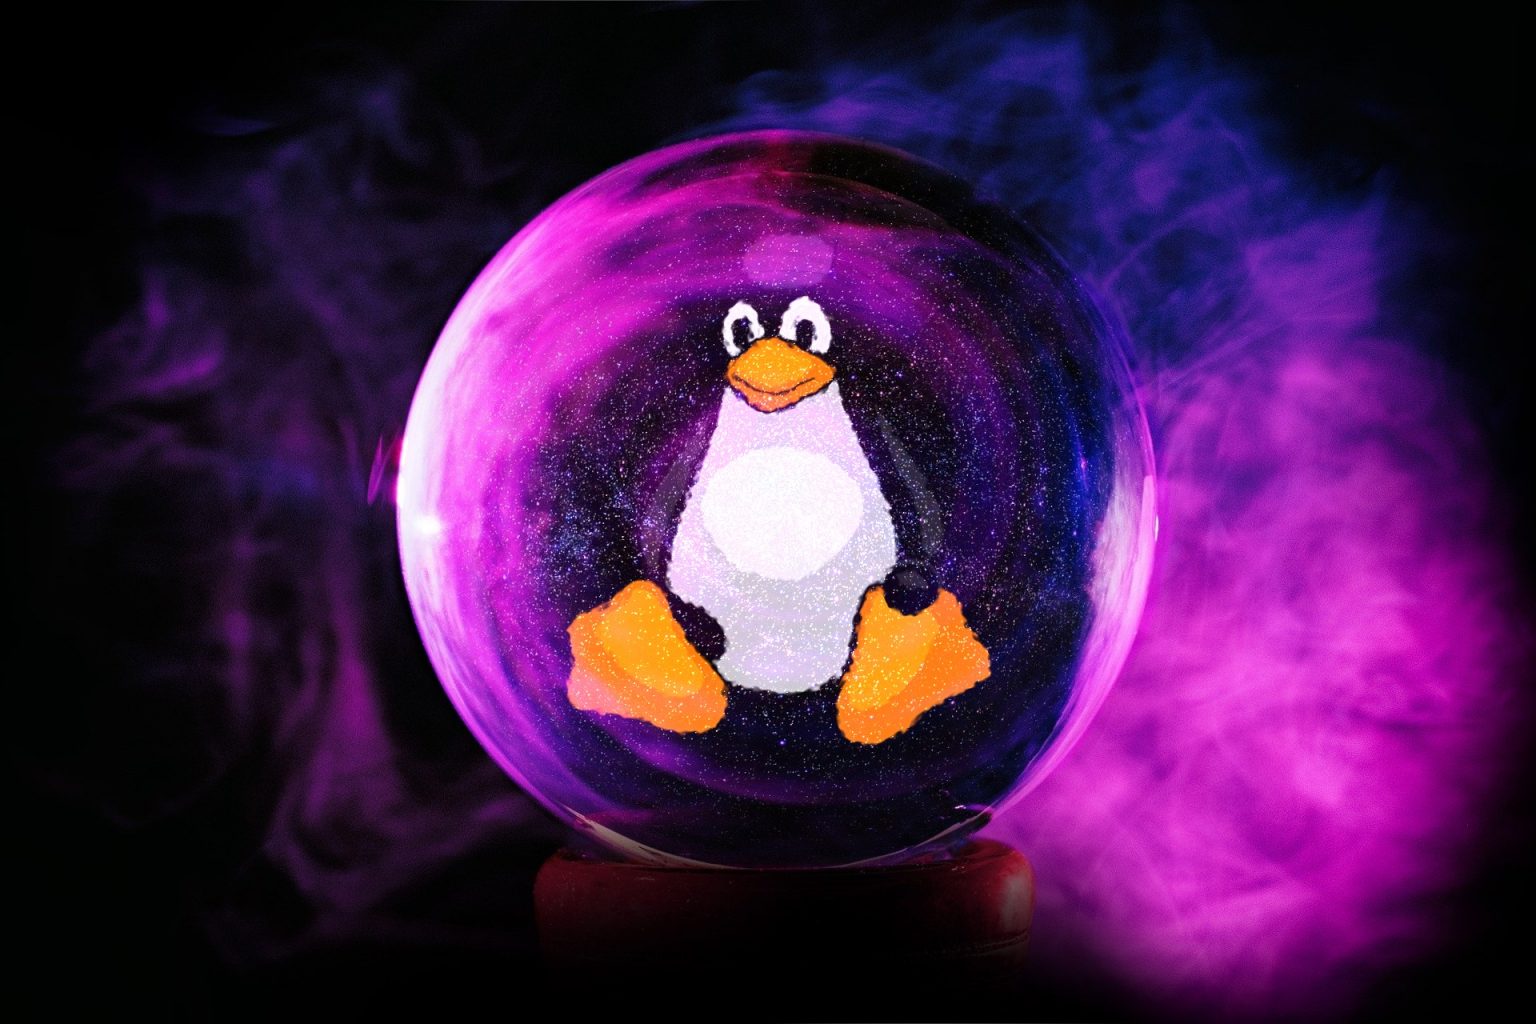 5 previsões para Linux e código aberto em 2020